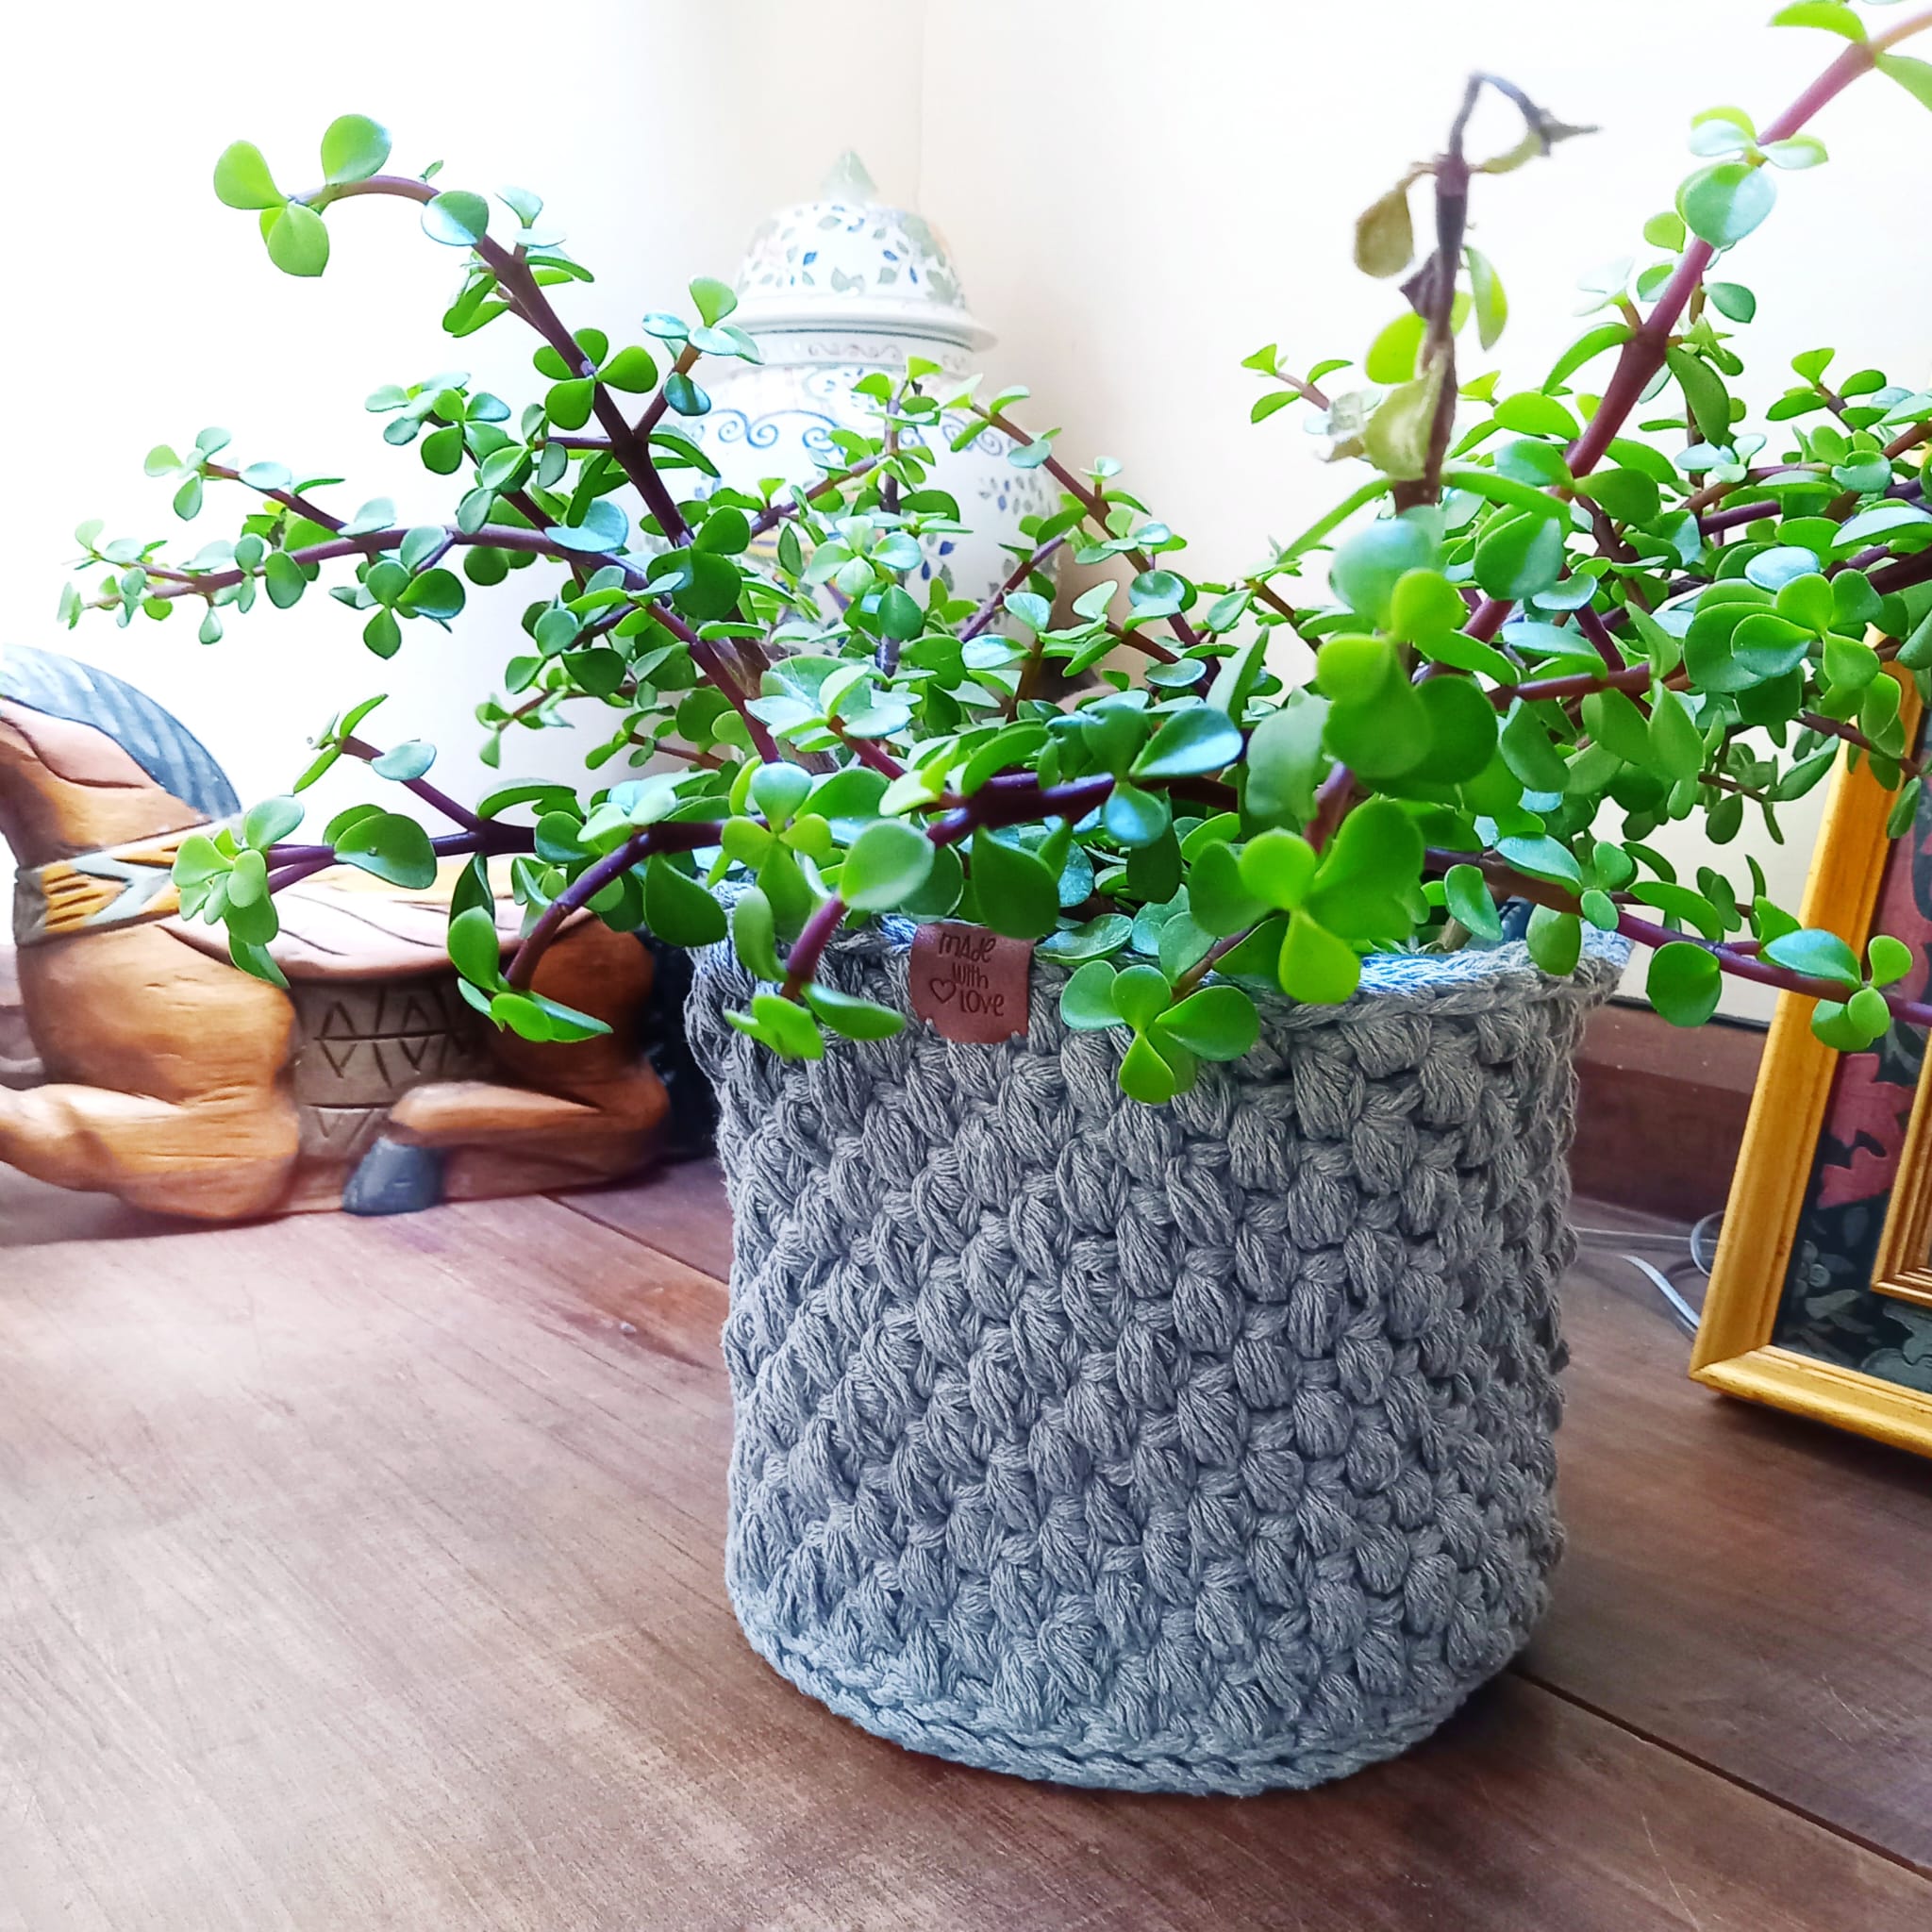 Grey basket crocheted by Annarella